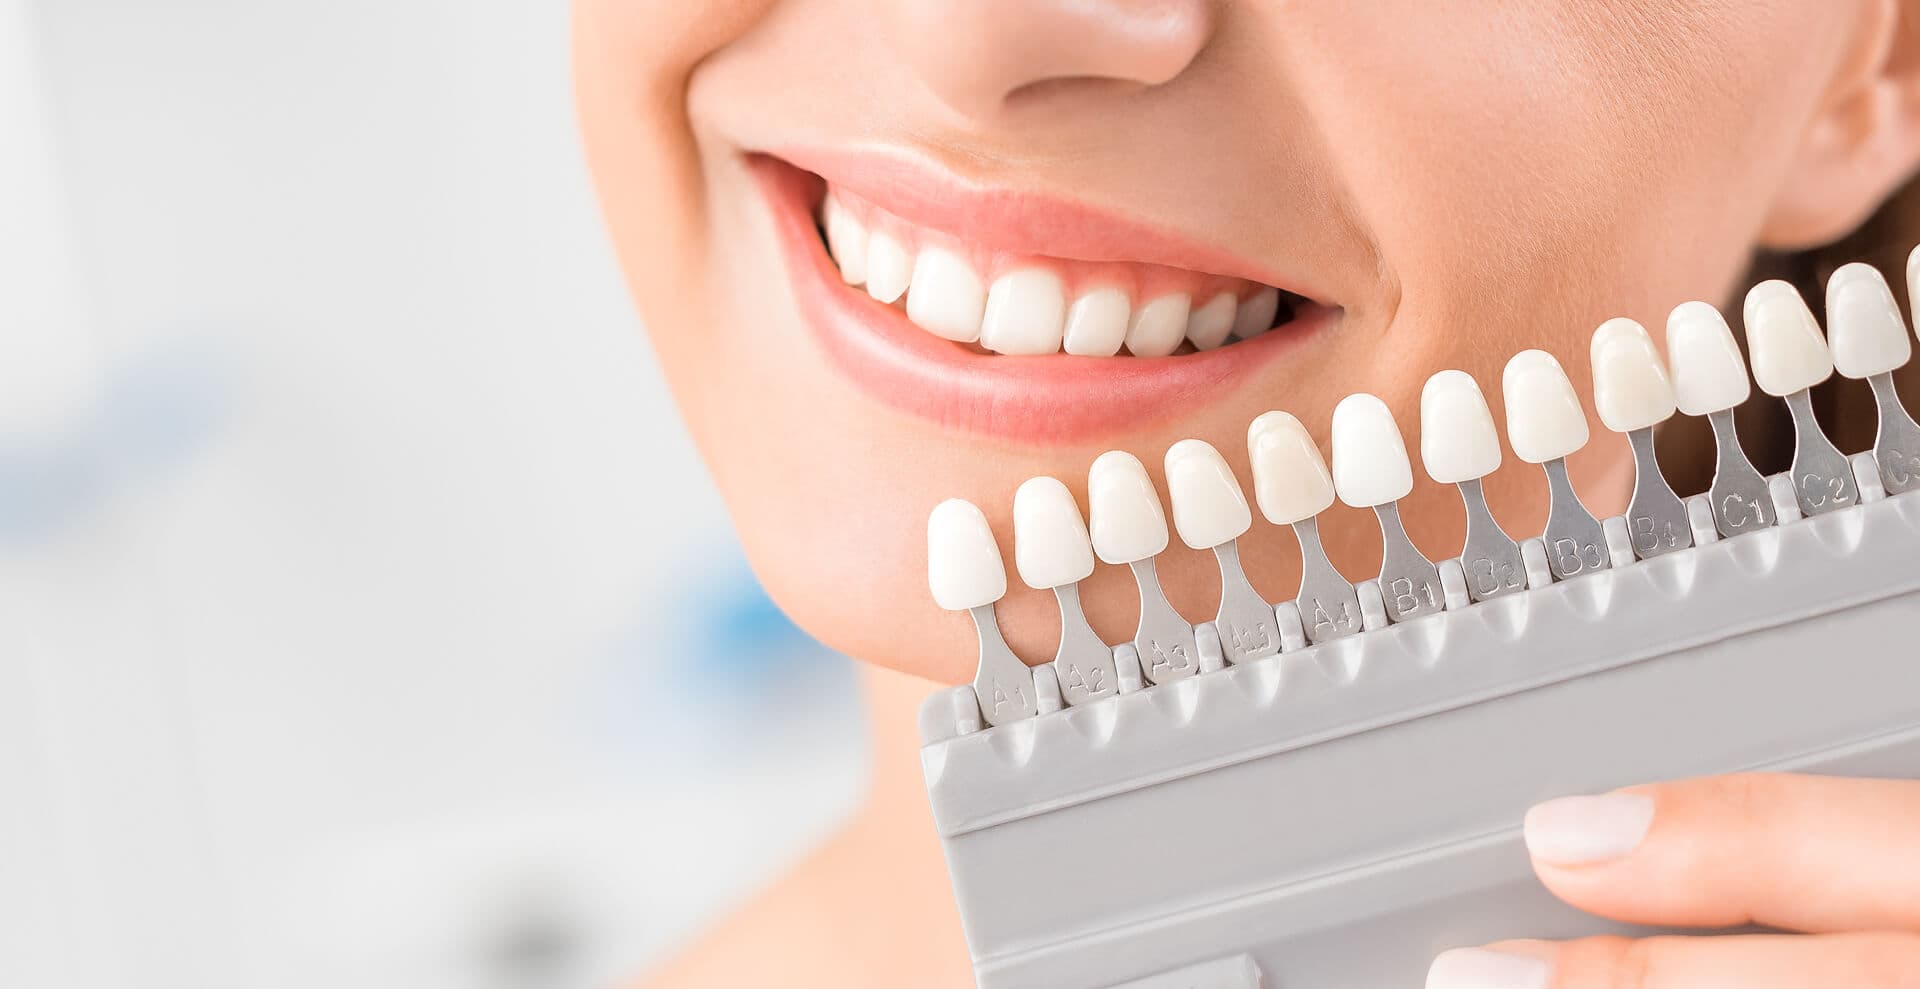 Centro Odontológico Dentine - Estética dental